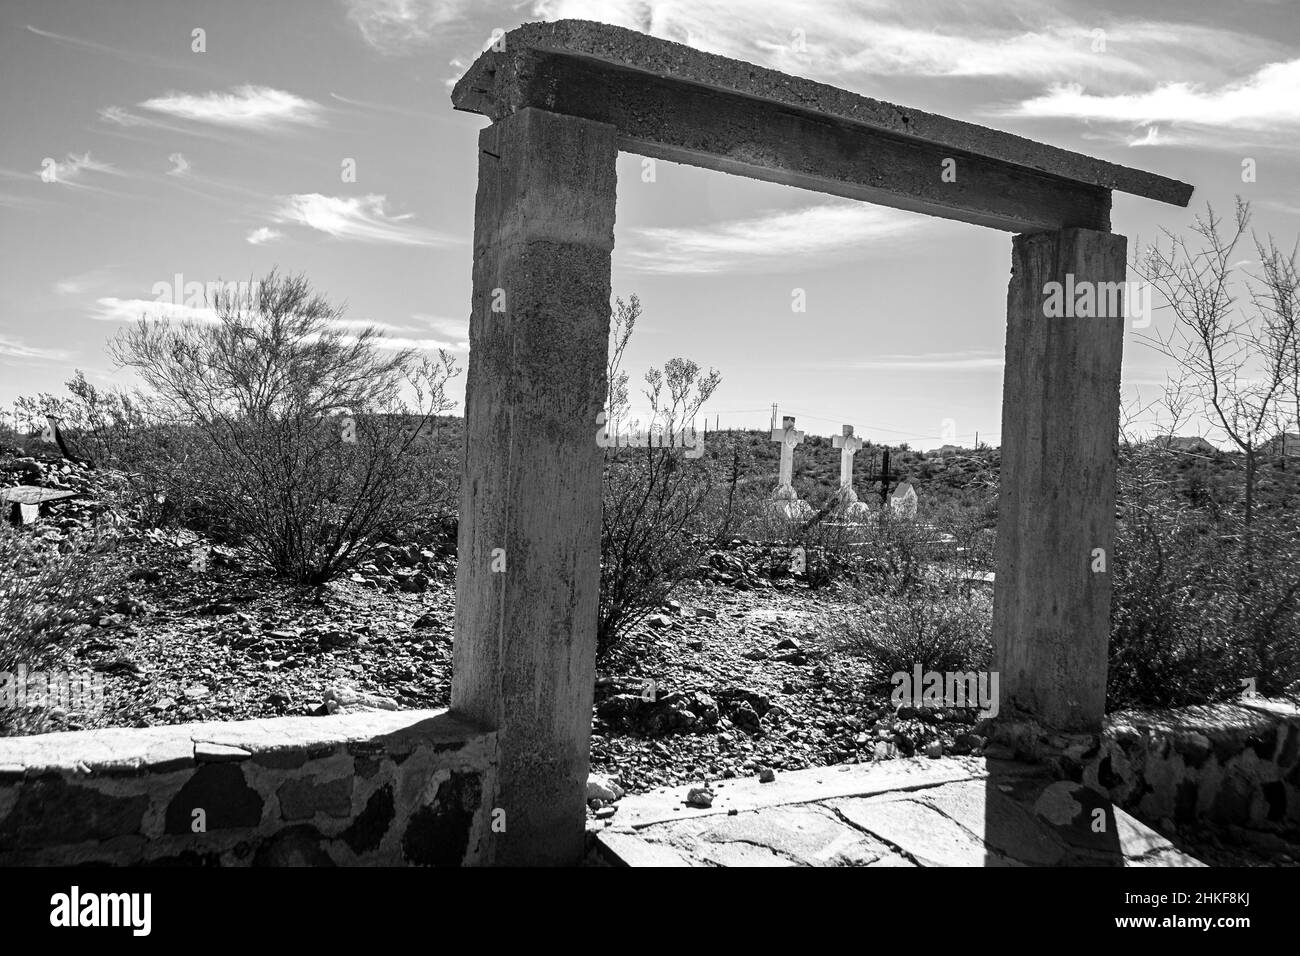 Une image en noir et blanc de l'entrée d'un cimetière situé sur le bord de la route, juste à l'extérieur de la ville de Sonoyta Banque D'Images